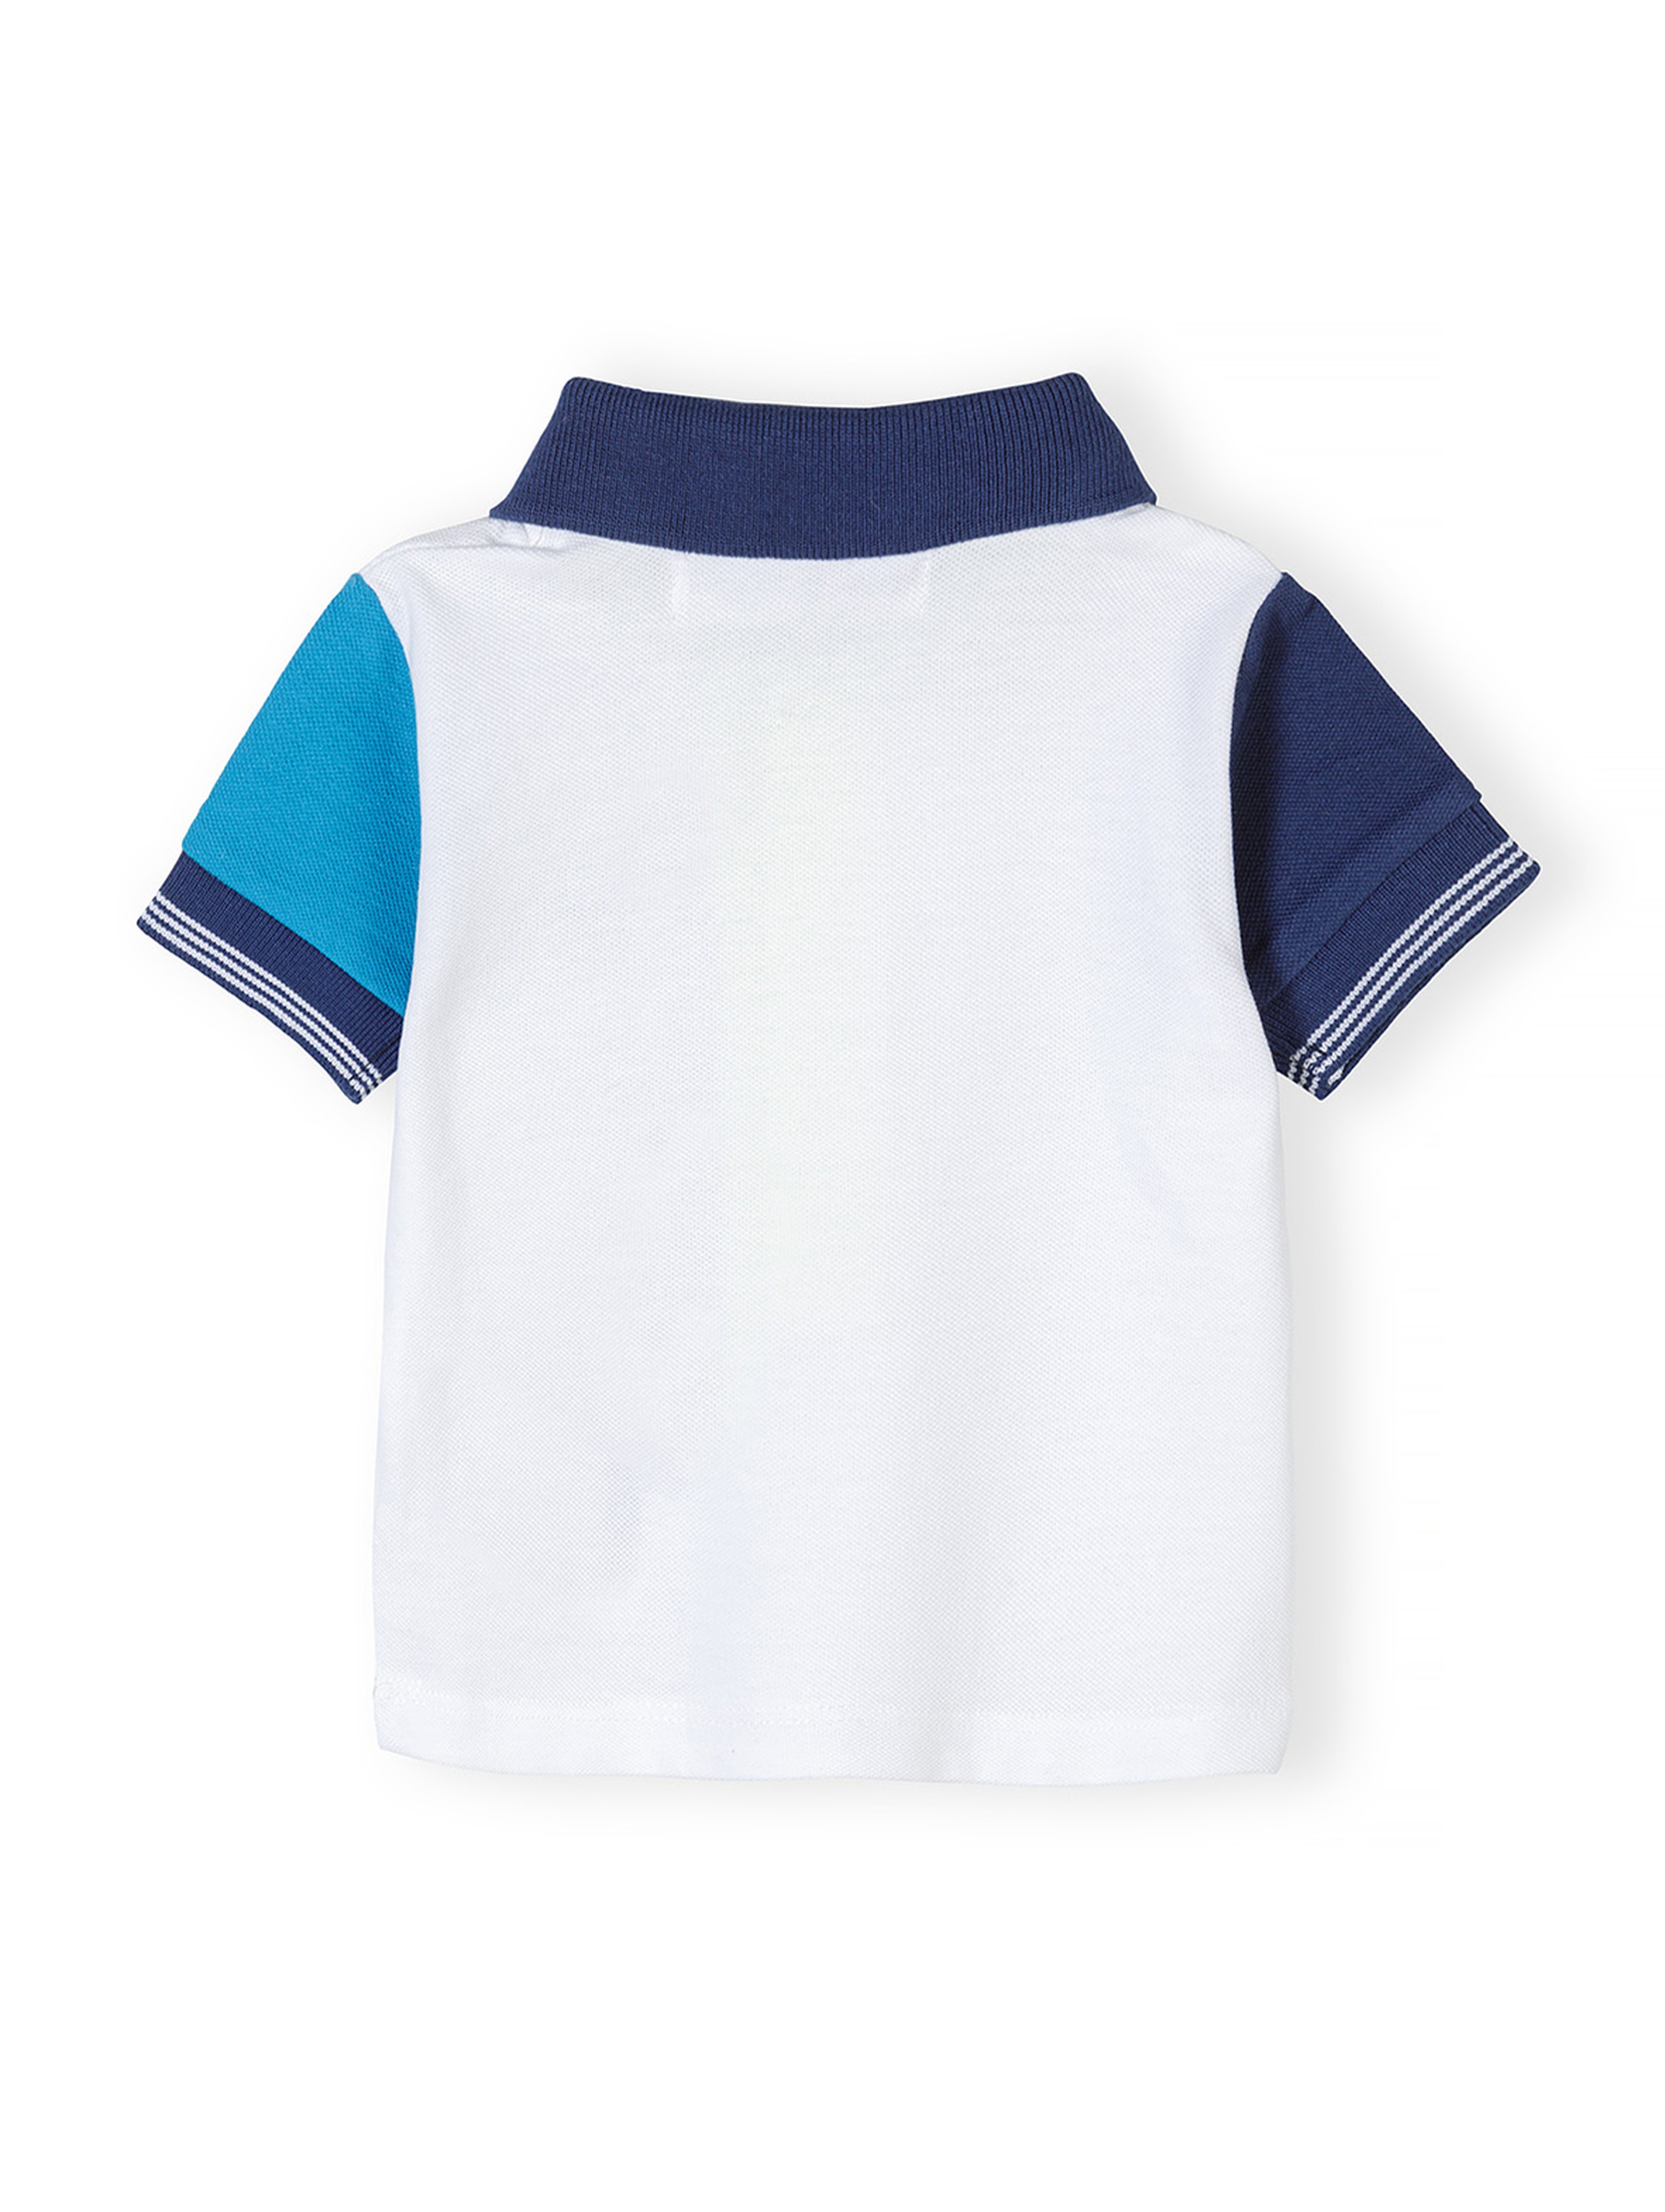 Dwuczęściowy komplet niemowlęcy- koszulka polo i niebieskie szorty